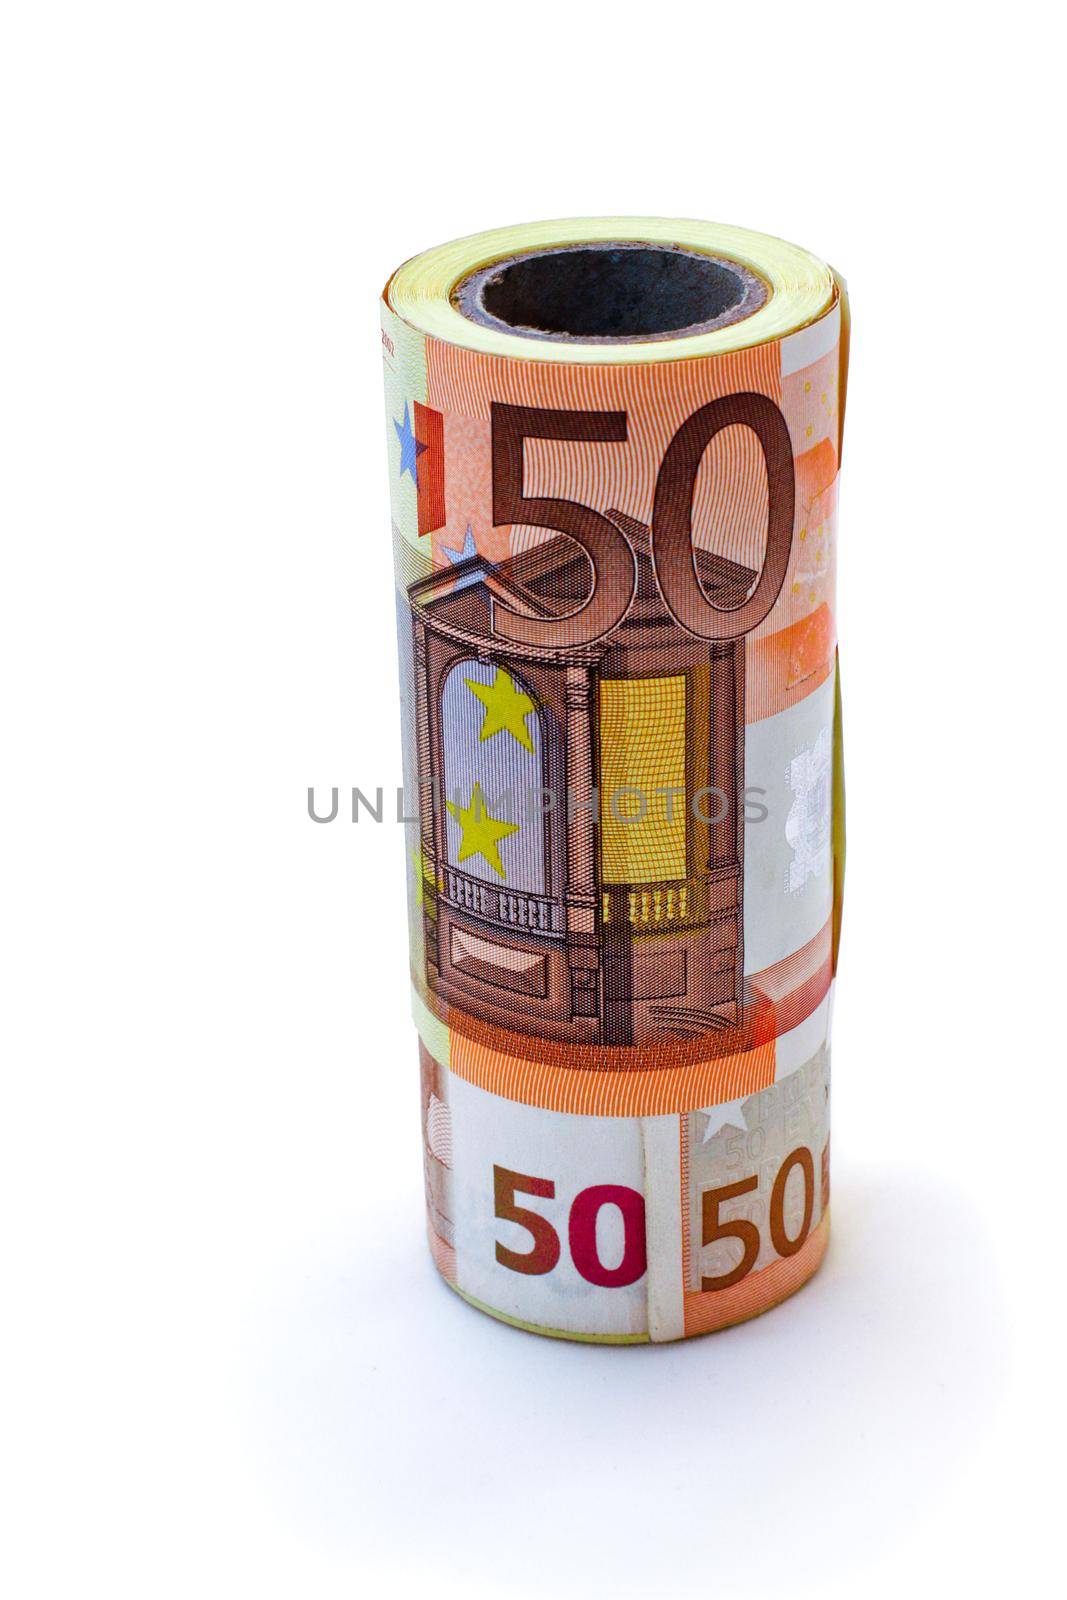 Monetary denominations advantage 50 euros on a white background